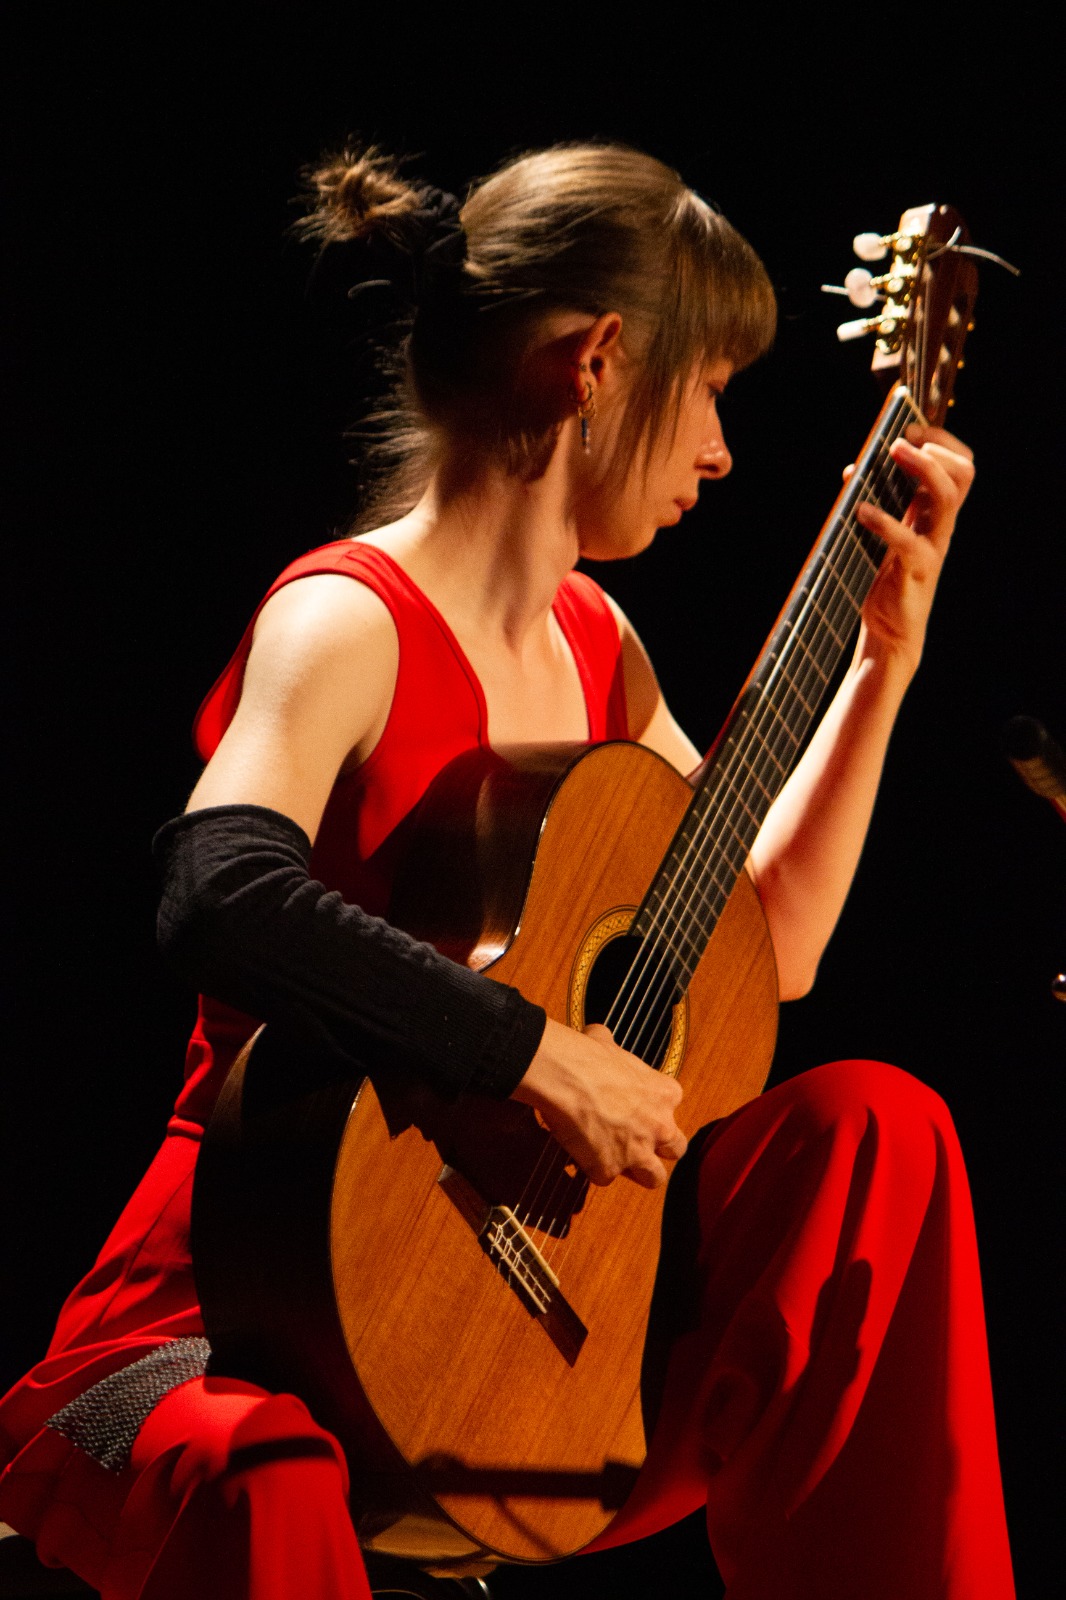 La intérprete de guitarra clásica Kasia Smolarek brindó un espléndido concierto al público potosino que se dio cita el jueves 23